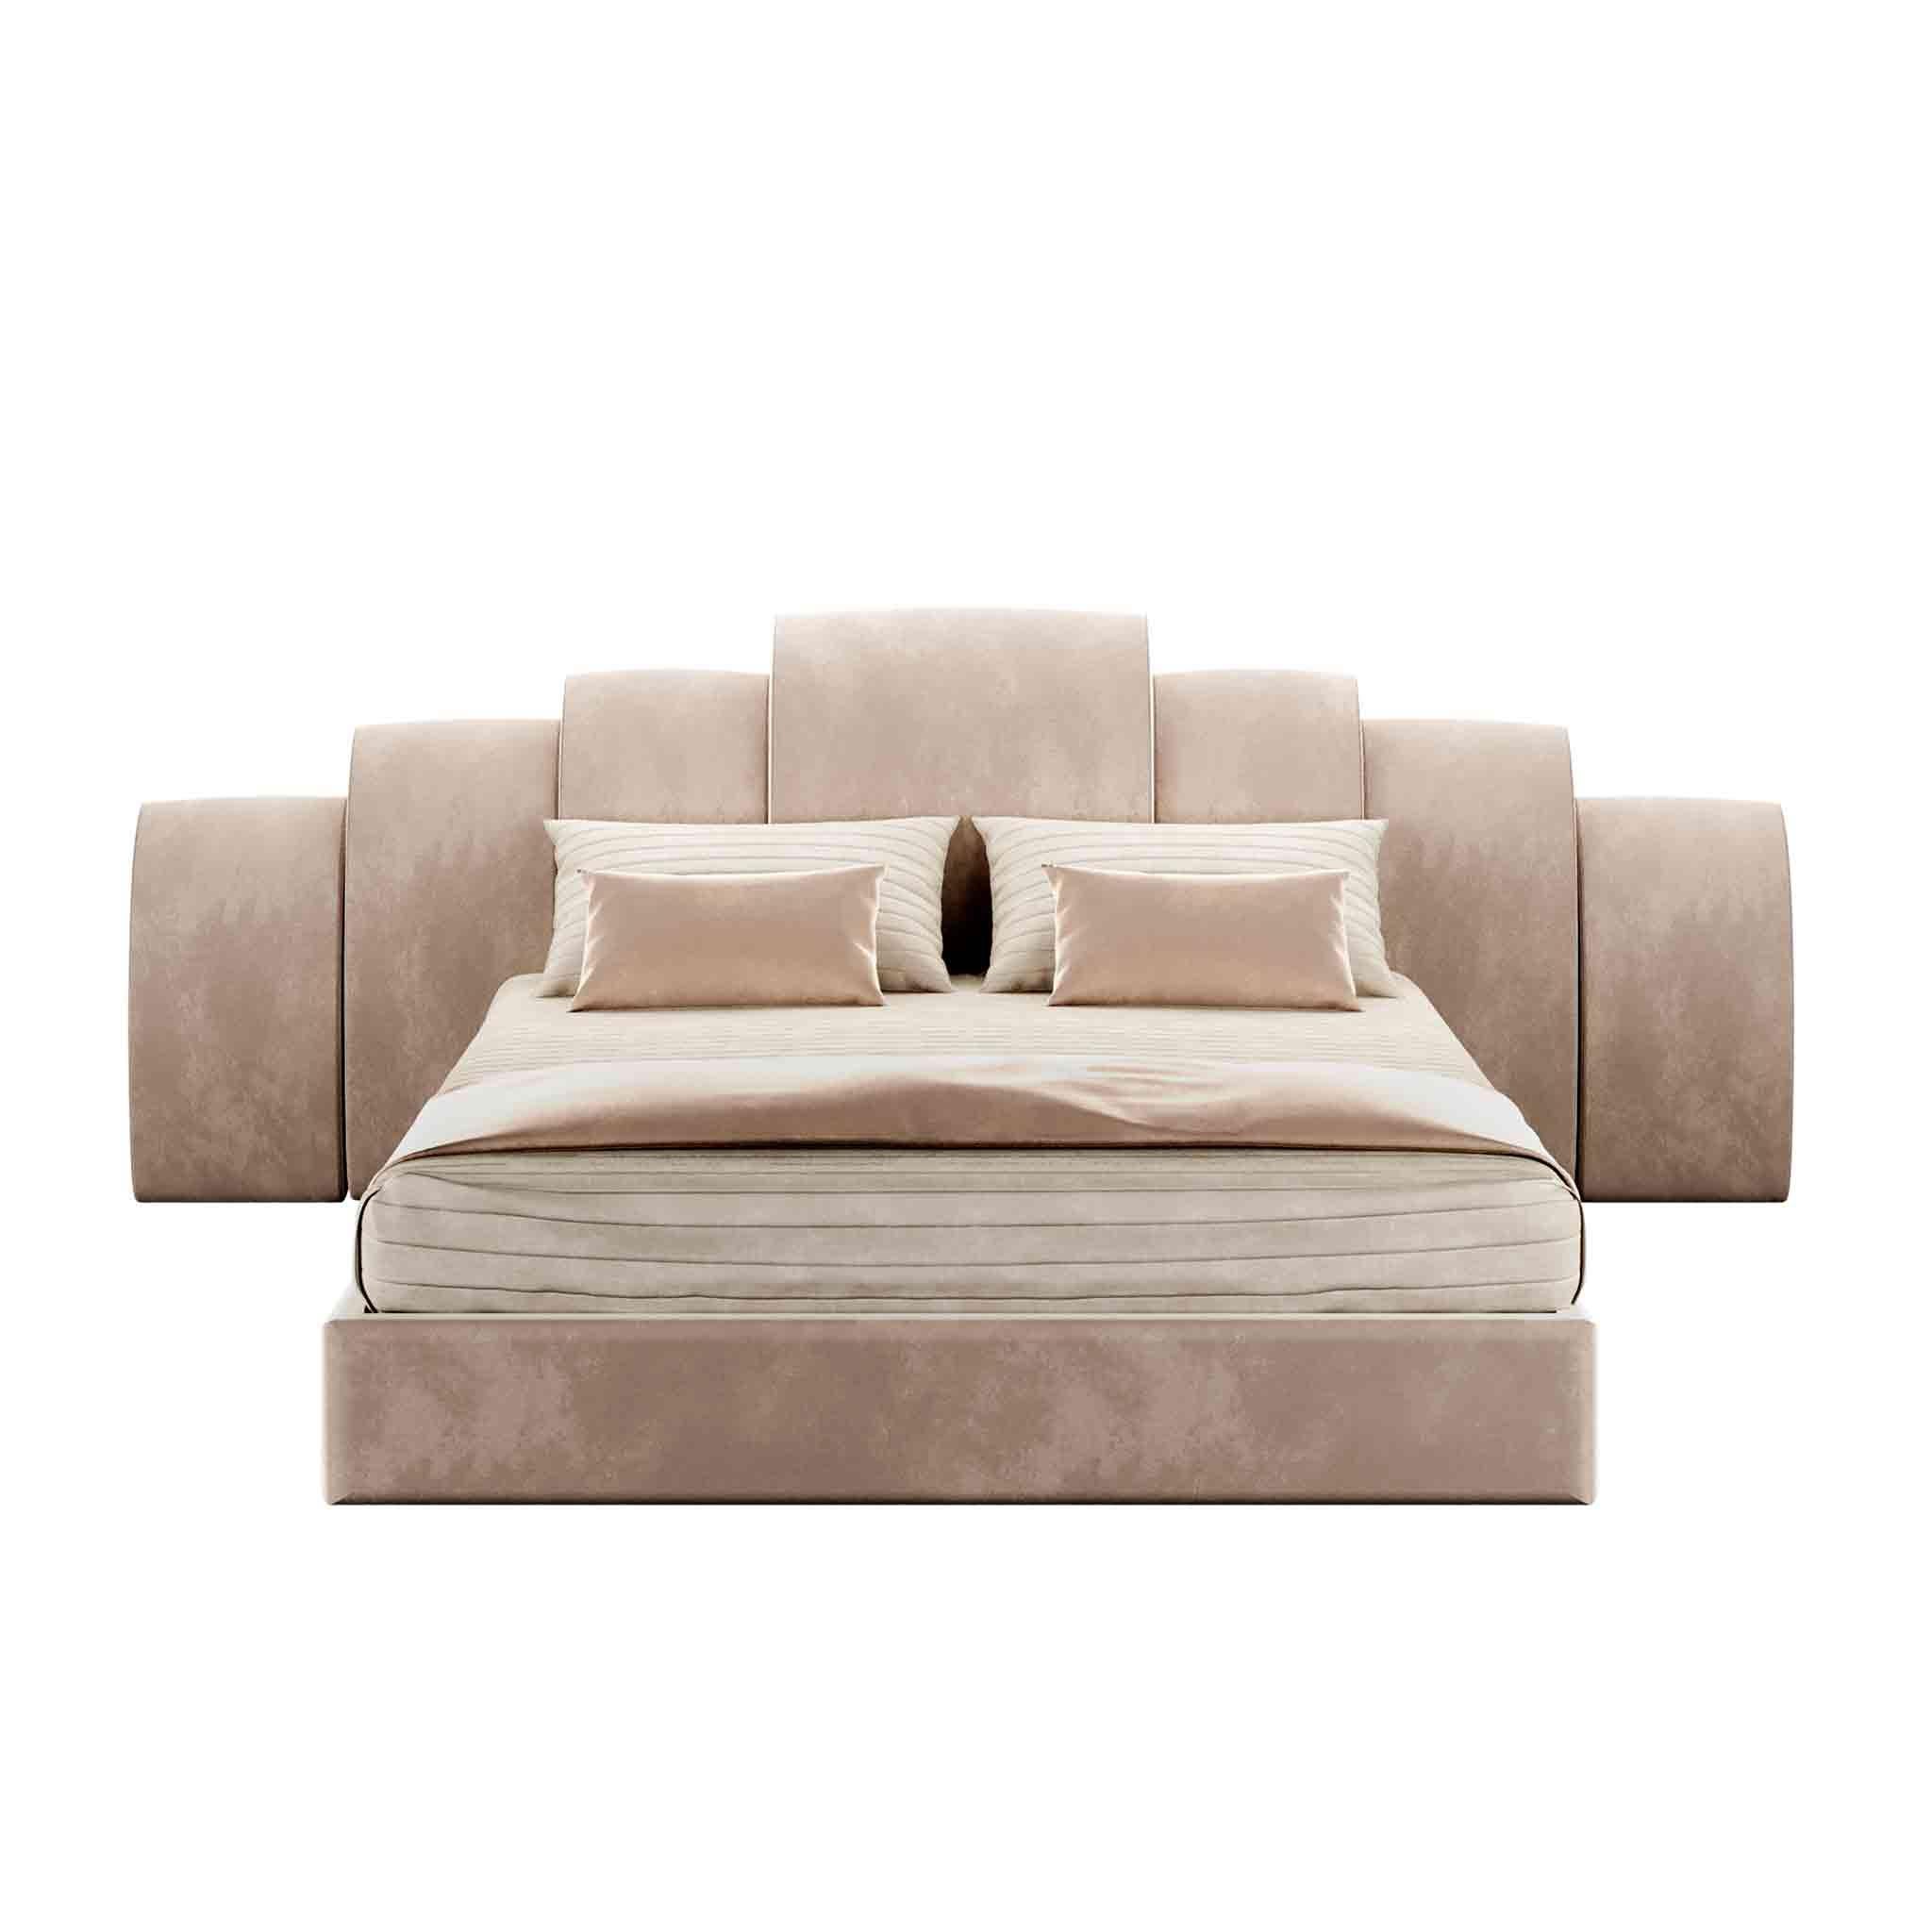 Kara Bed ist ein luxuriöses Designerstück, das auf der Suche nach Schlichtheit alle überflüssigen Dekorationen entfernt. Ein modernes, mit Samt gepolstertes Bett,  ist die beste Wahl für die Gestaltung eines modernen Schlafzimmerprojekts.
Das